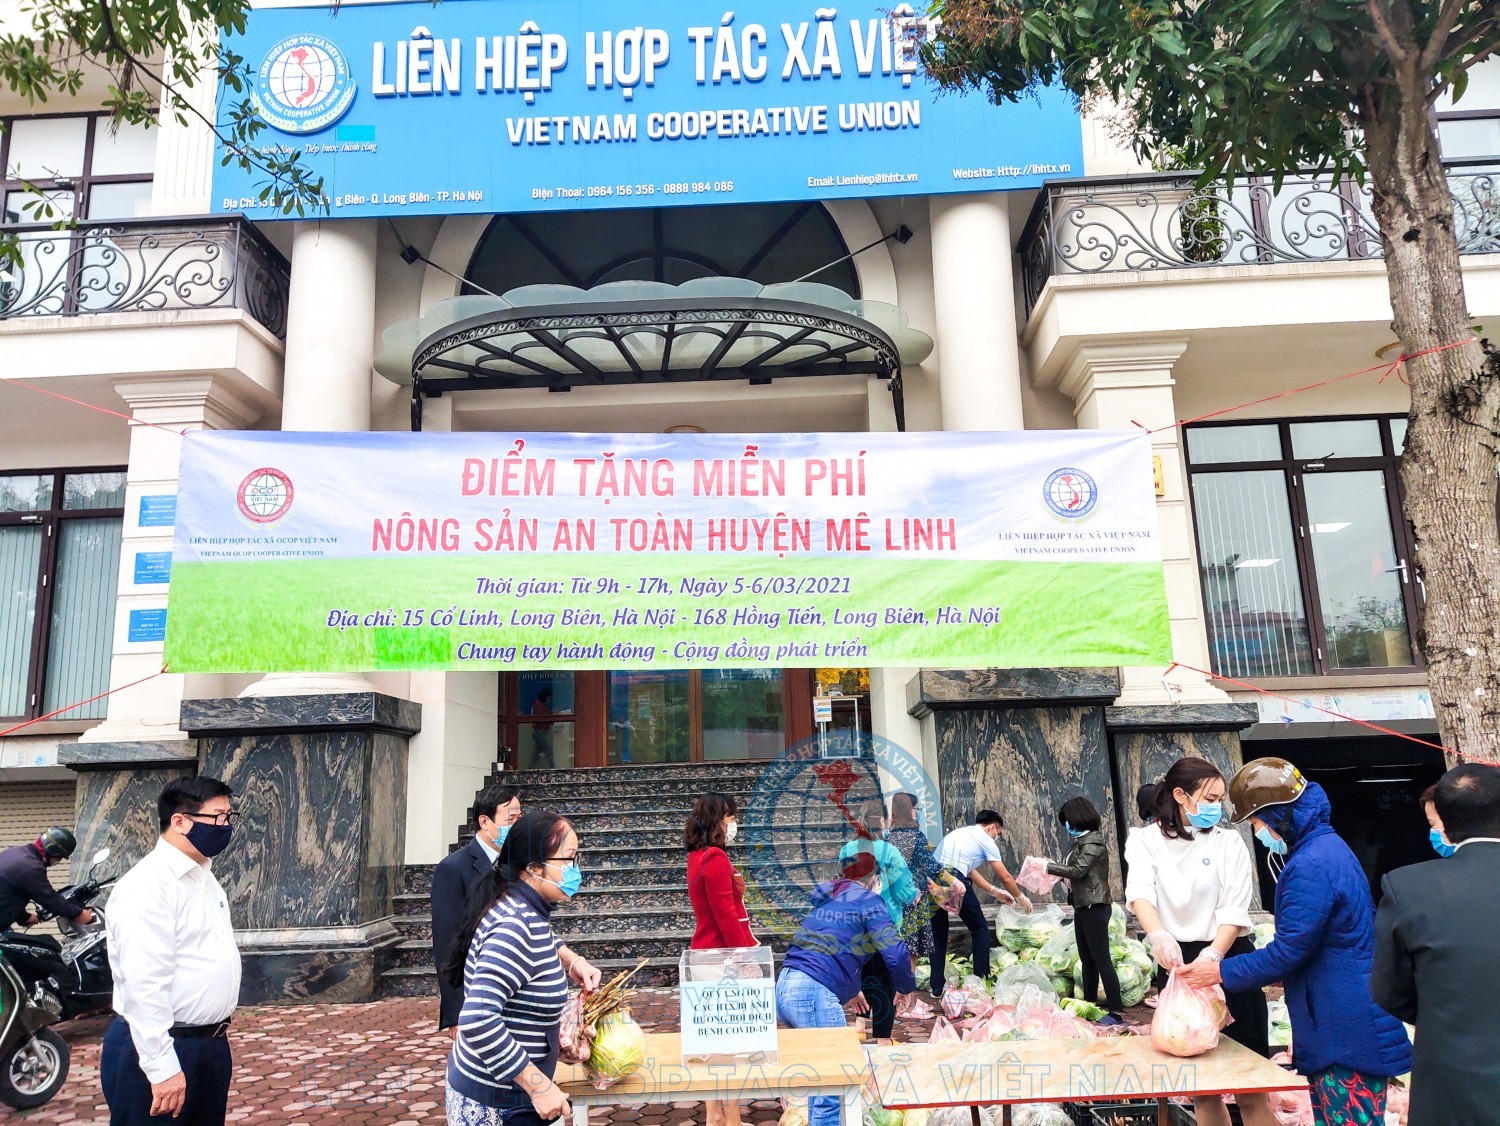 Tặng miễn phí nông sản an toàn huyện Mê Linh tại Cổ Linh